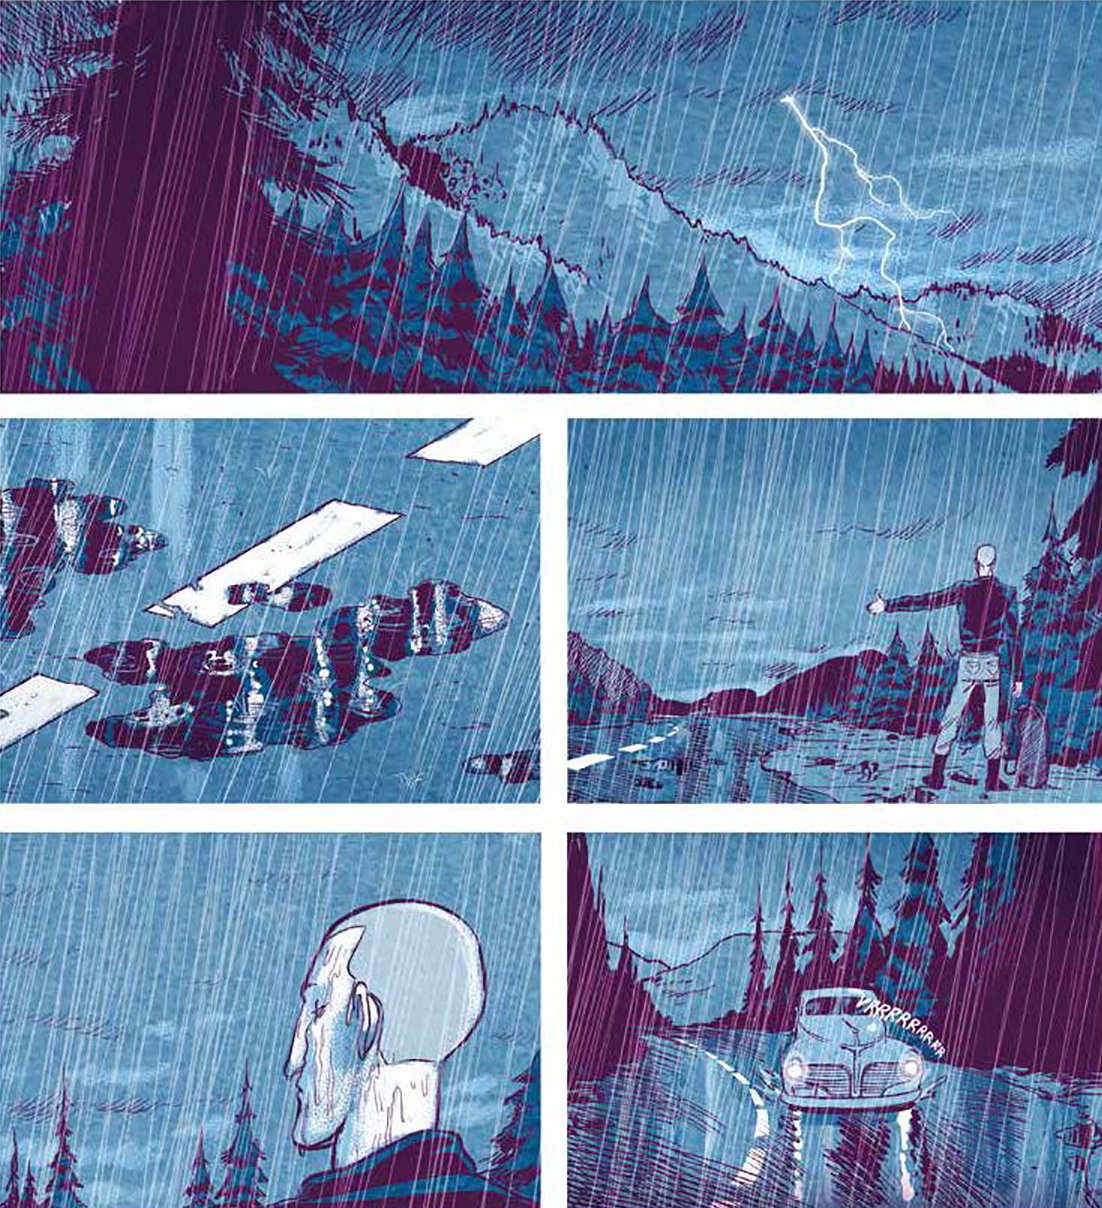 le tavole estratte dal fumetto mostrano il protagonista fare l'autostop nel mezzo di una notte piovosa - nerdface